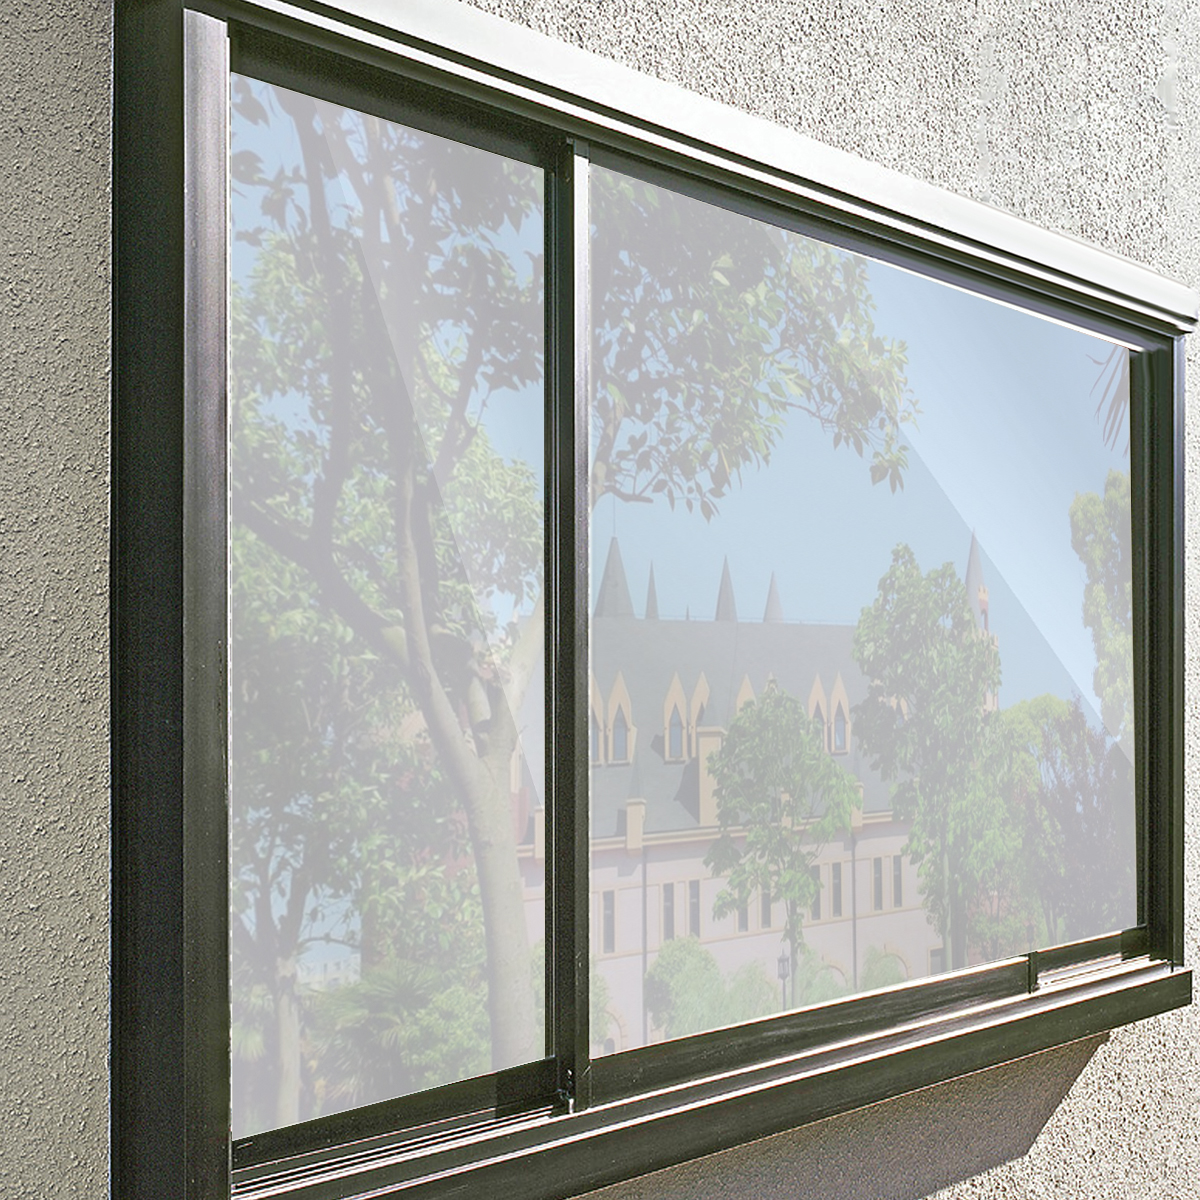 100x80cm-Mirror-Reflective-One-Way-Privacy-Window-Film-Sticky-Back-Glass-Tint-1679329-3